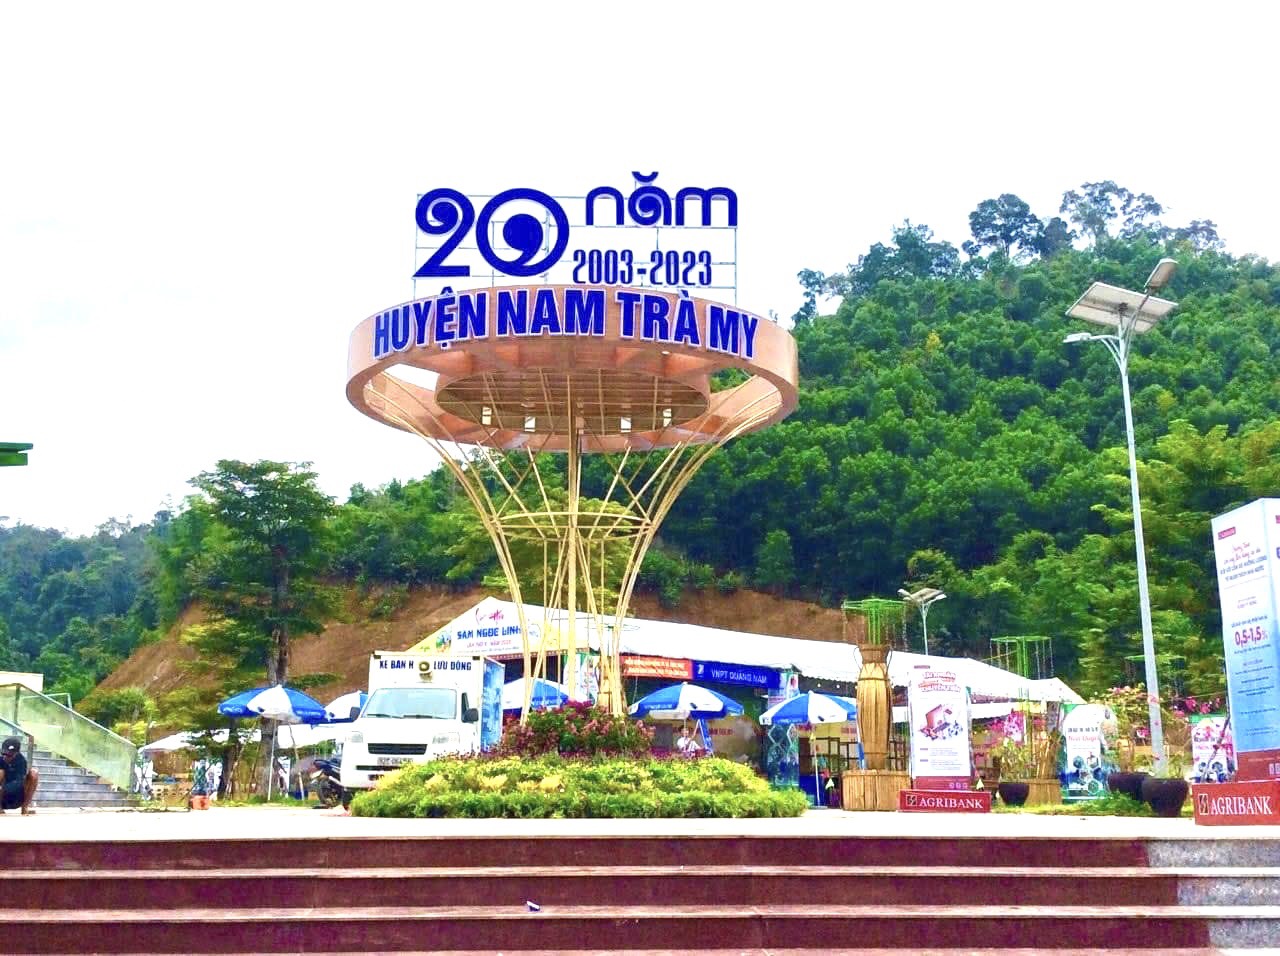 UBND huyện Nam Trà My long trọng tổ chức Khai mạc Lễ hội sâm Ngọc Linh lần thứ V- năm 2023 với chủ đề 